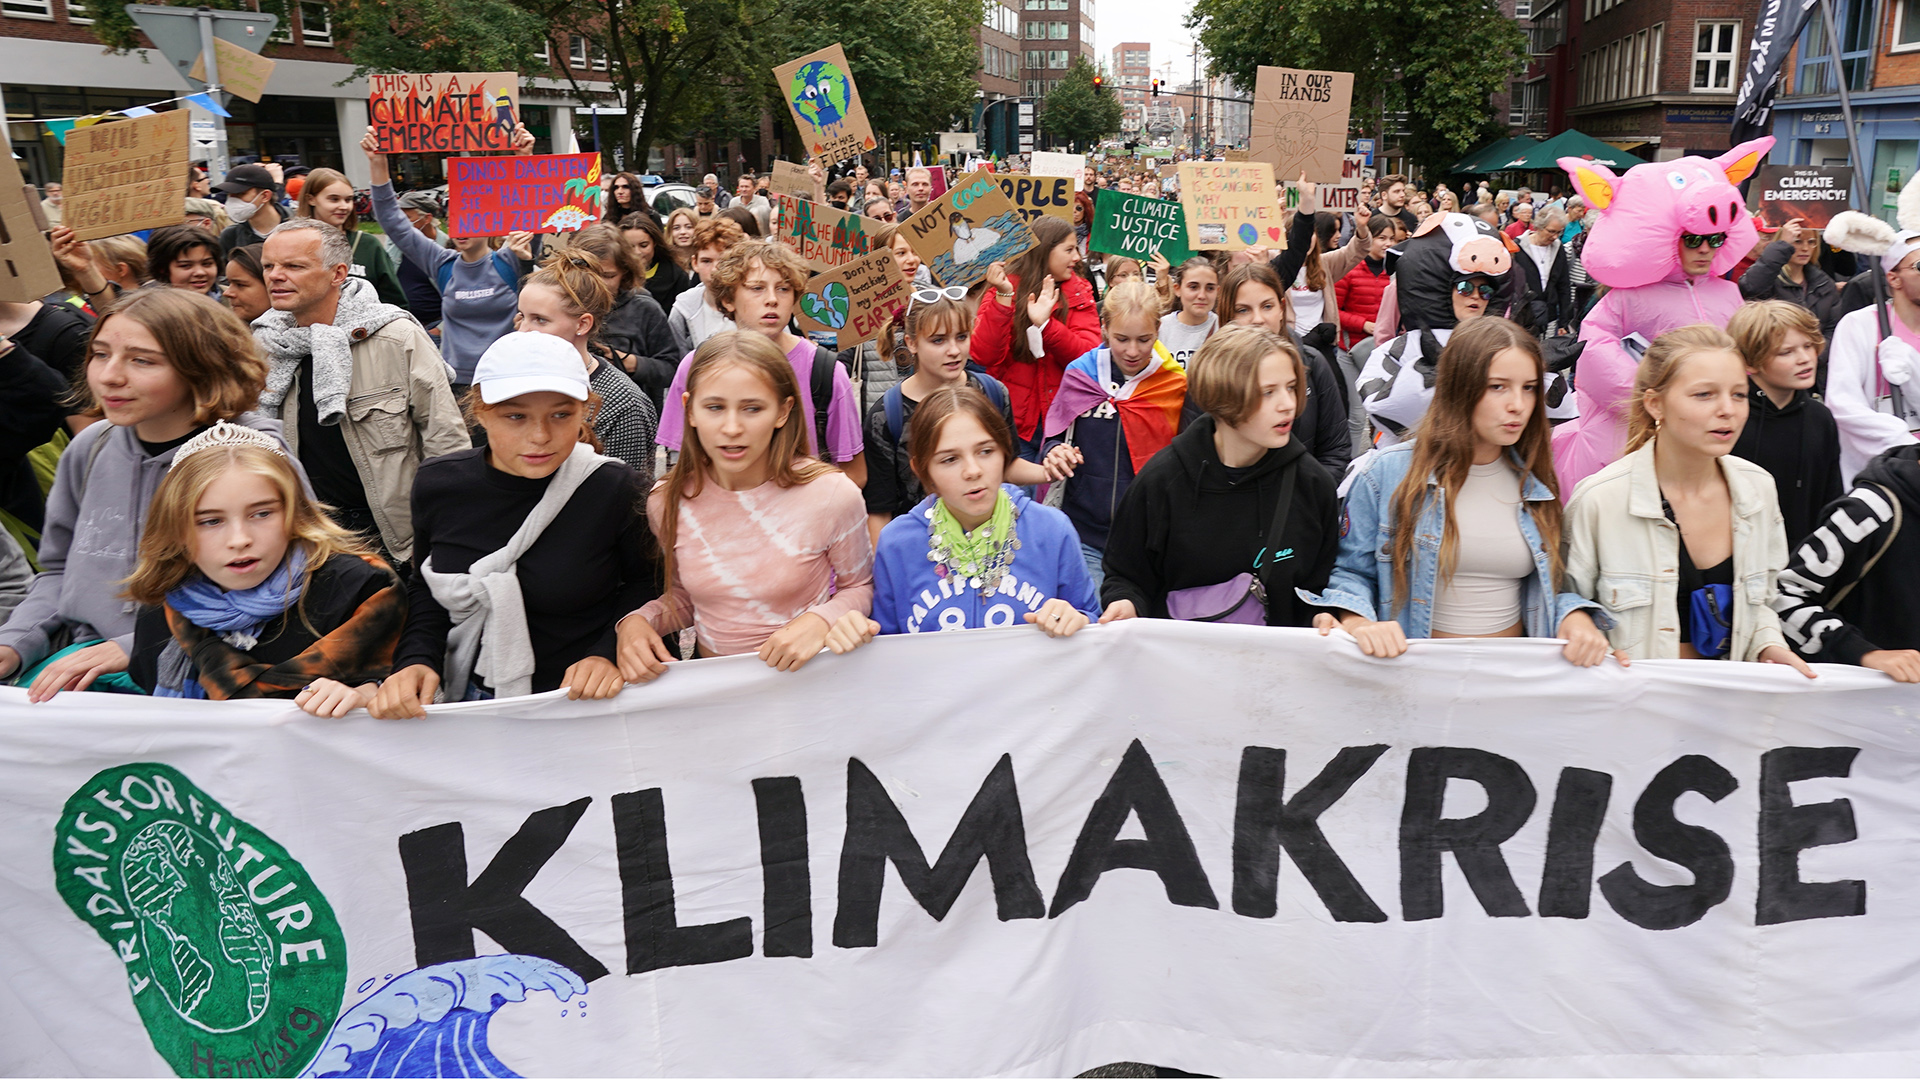 Teilnehmer und Teilnehmerinnen des globalen Klimastreiks von Fridays for Future (FFF) demonstrieren in der Innenstadt.  | picture alliance/dpa